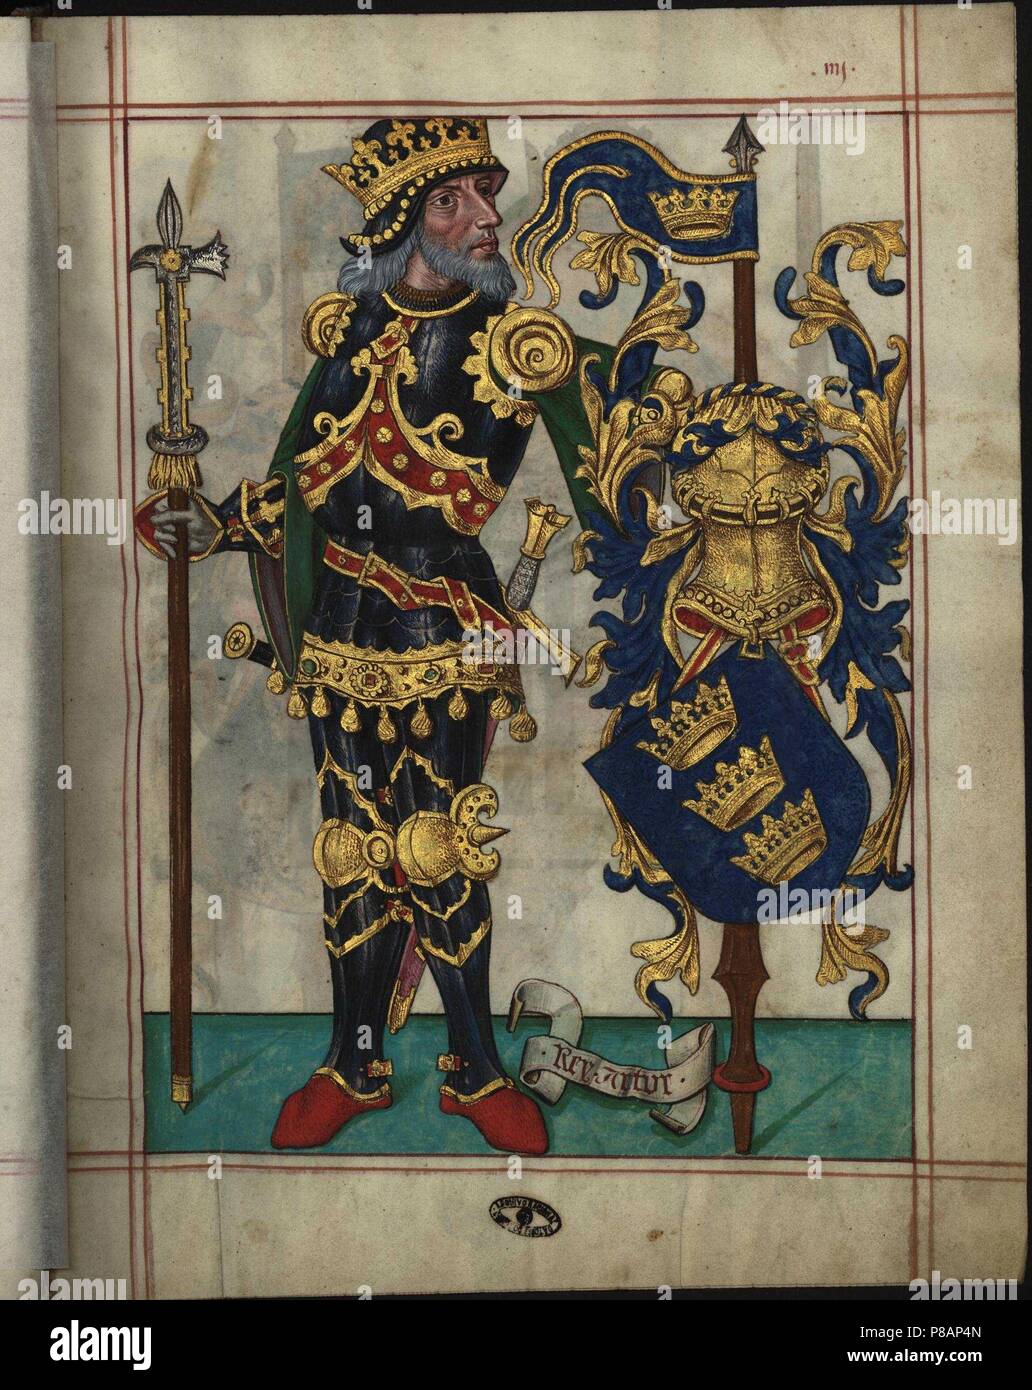 King Arthur (From Livro do Ameiro-Mor). Museum: Arquivo Nacional da Torre do Tombo. Stock Photo